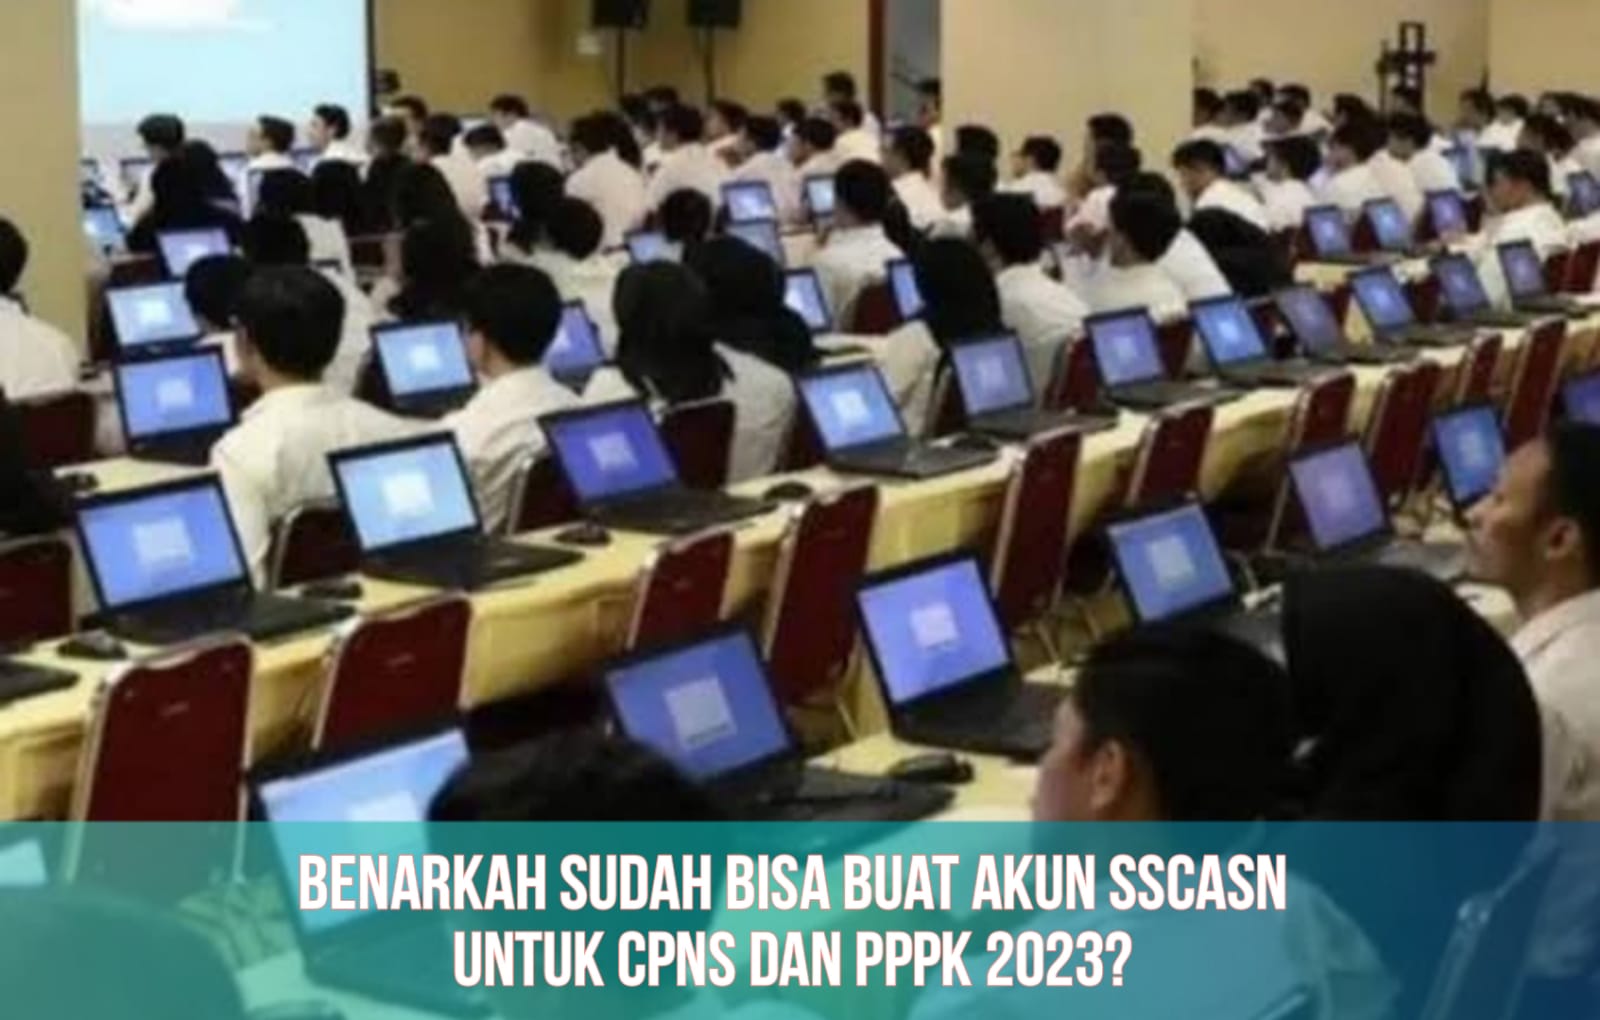 Sudah Bisa Buat Akun SSCASN untuk Daftar CPNS dan PPPK 2023, Benarkah? Begini Kata BKN